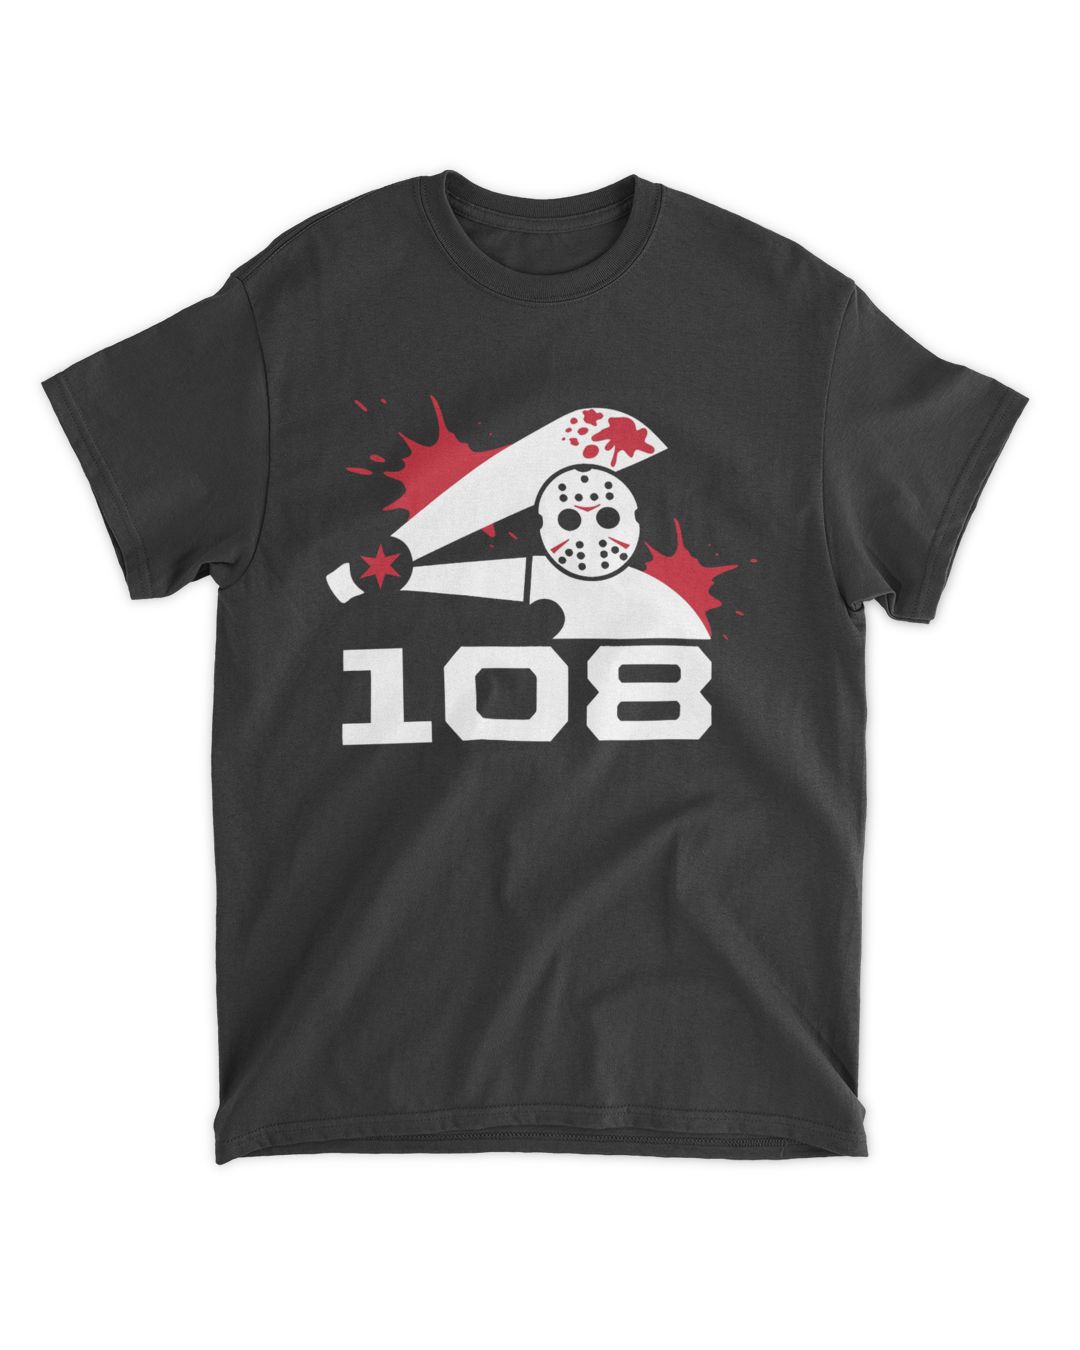 The 108 Og Killer Shirts | SenPrints